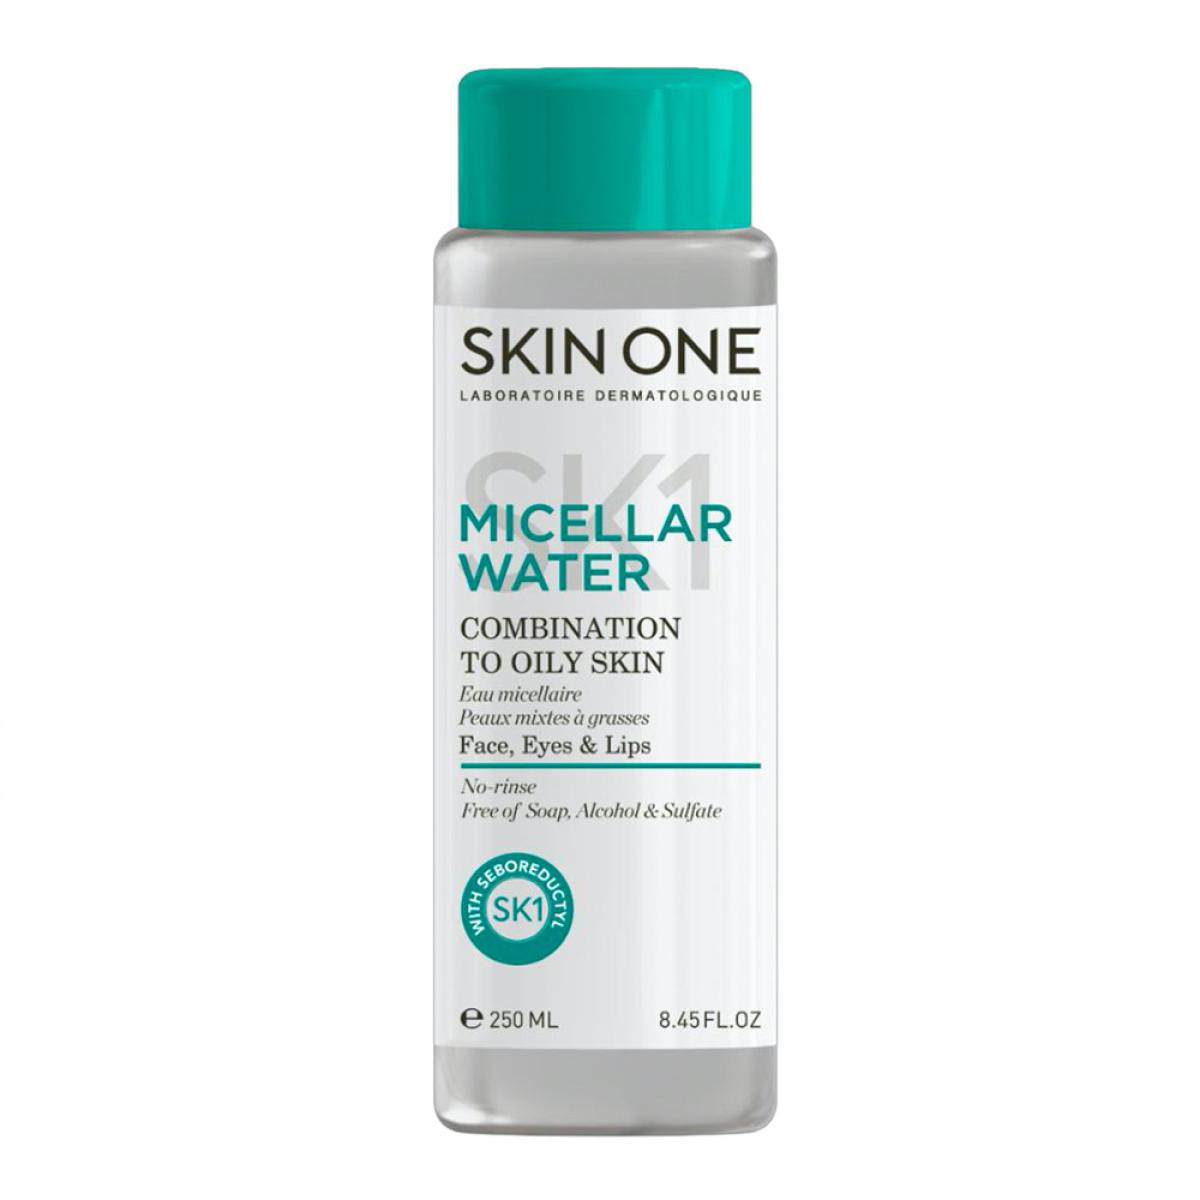 محلول پاک کننده آرایش پوست مختلط تا چرب - Micellar water Combination To Oily Skin 250ml